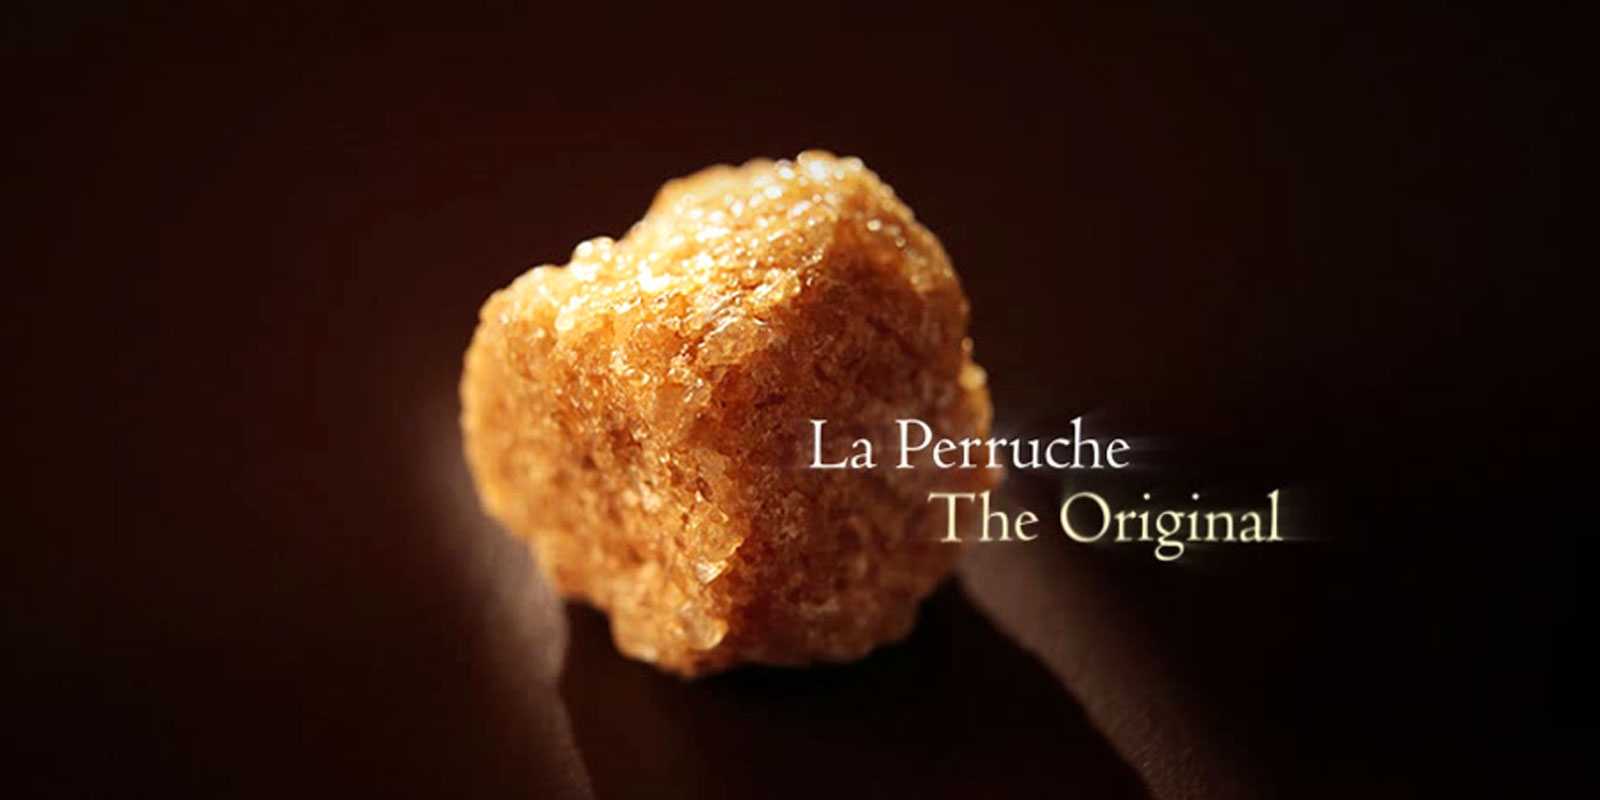 La Perruche - trsni sladkor La Perruche je izjemen izdelek posebnega okusa, ki bo navdusil vse tiste, ki cenijo fin in prefinjen okus. Preprosto, v vase cute pricara cisti uzitek. La Perruche je na voljo v nepravilnih sladkornih kosih v beli ali zlato rjavi barvi. Kristalna oblika v stresalniku, znana tudi kot kasonada.